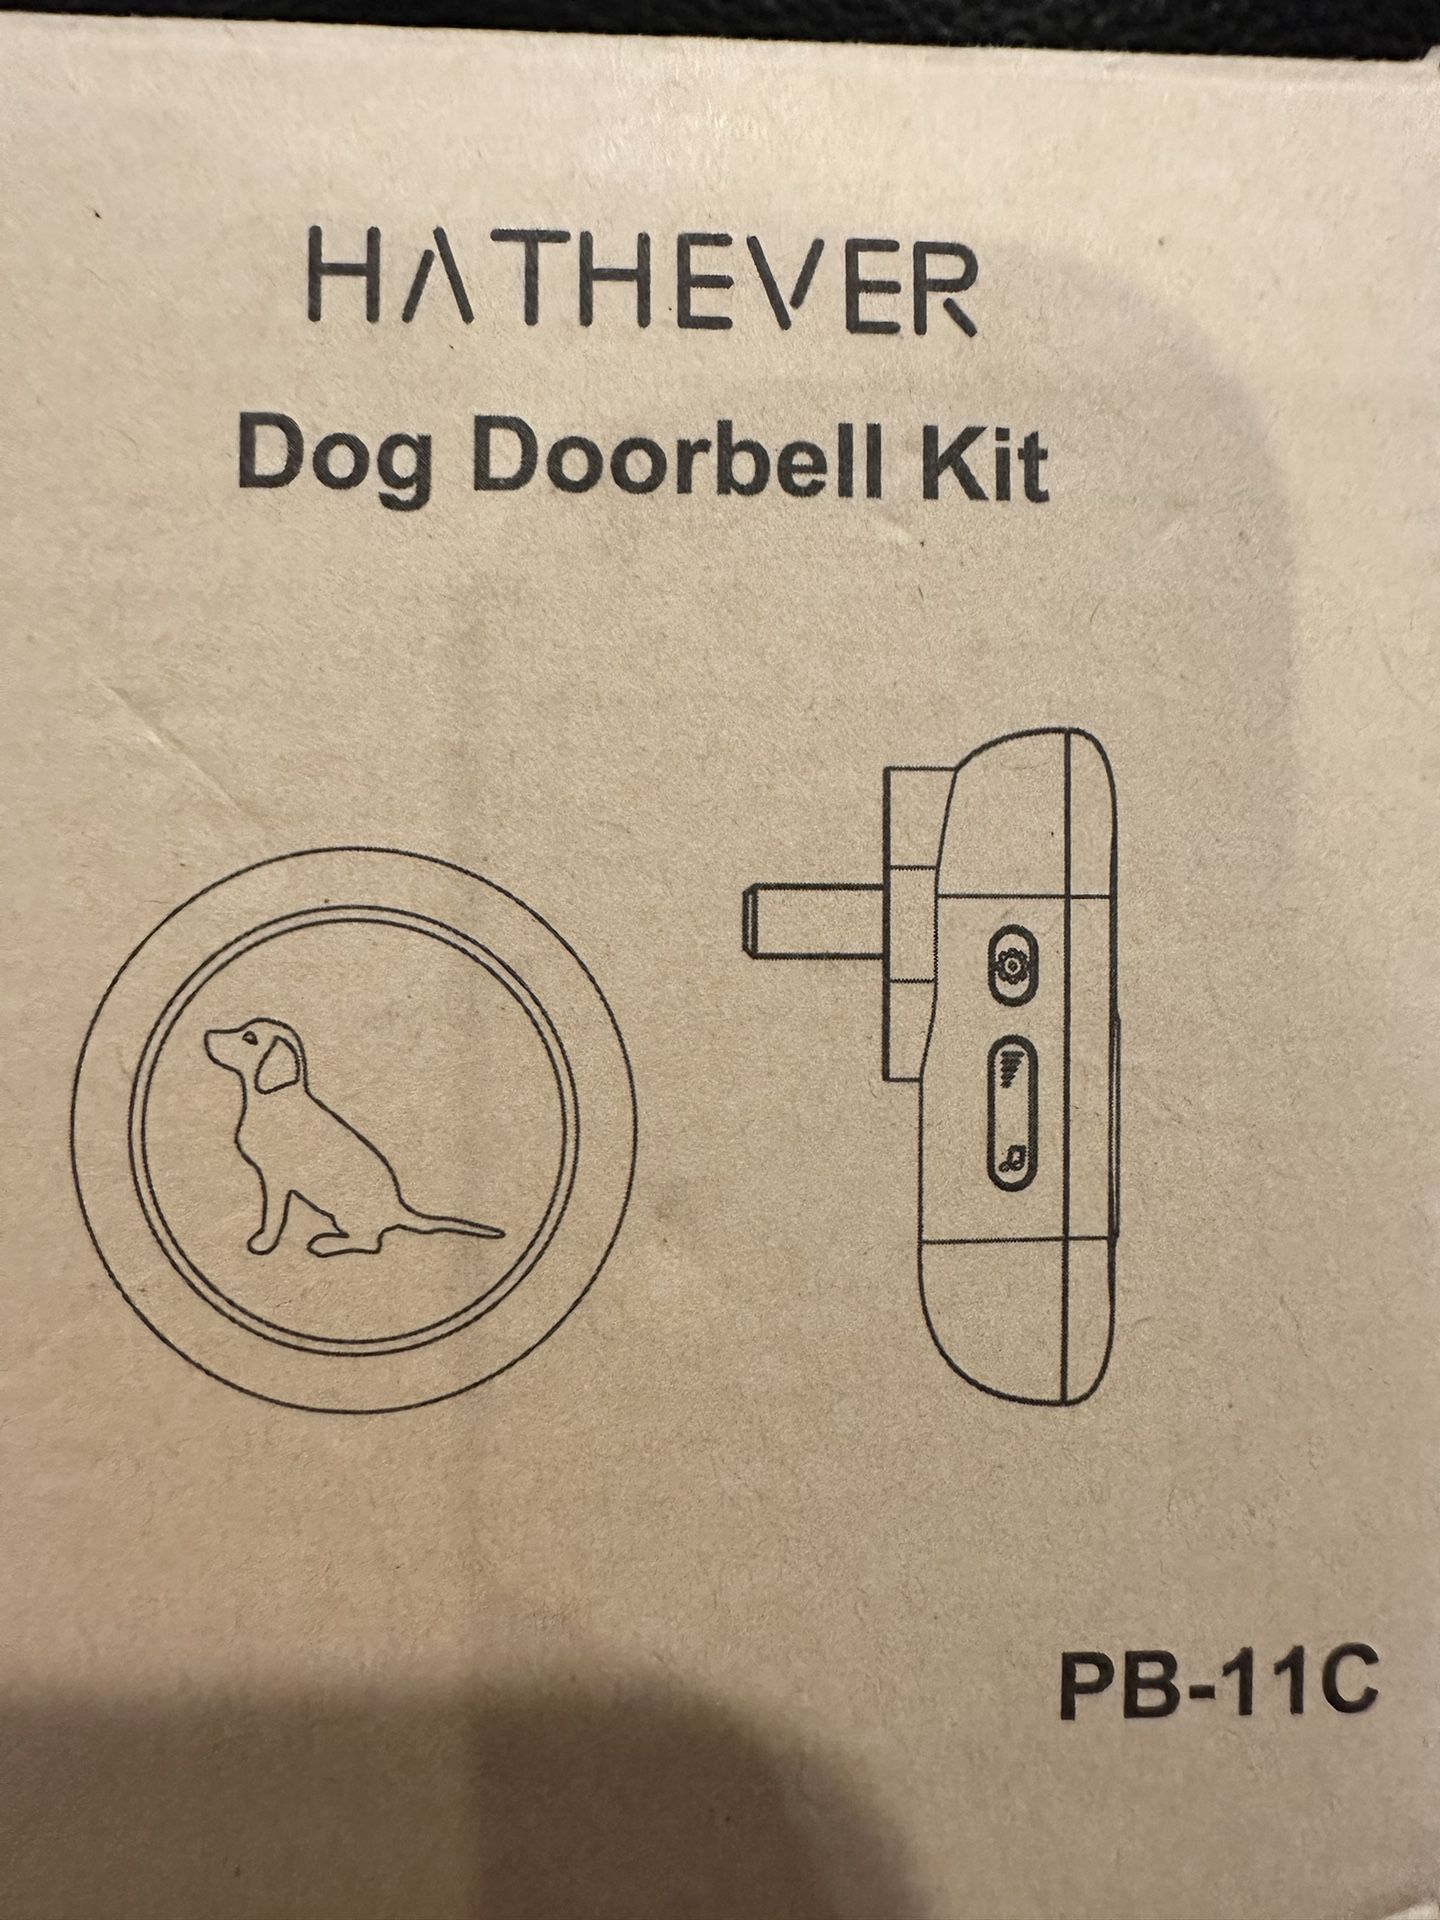 New in box: Wireless Doggie Door Bell